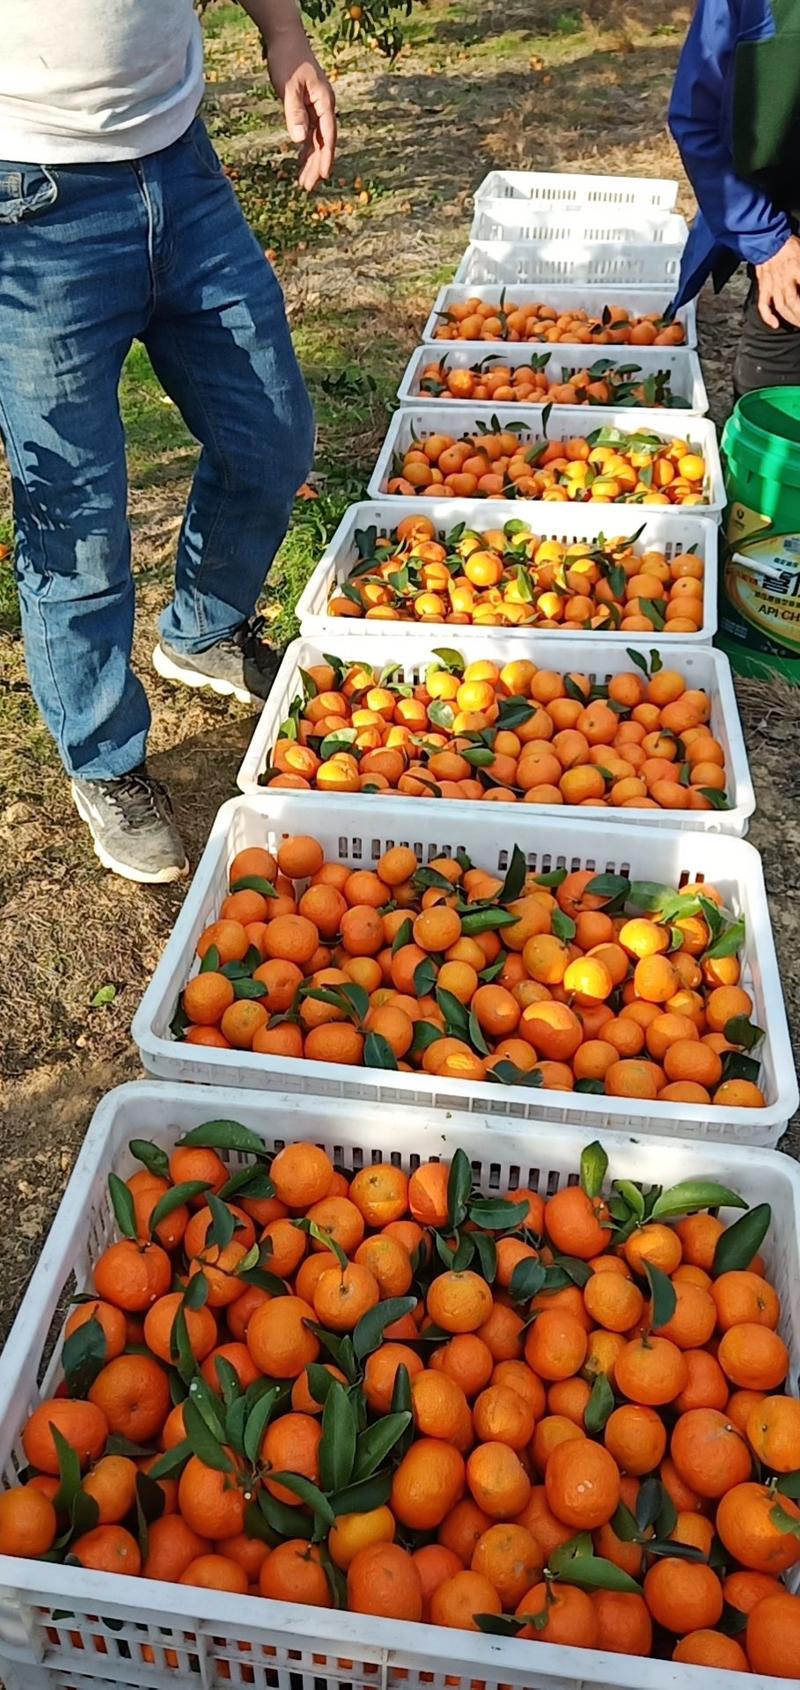 沙糖橘代办每斤1.5元10000斤起批